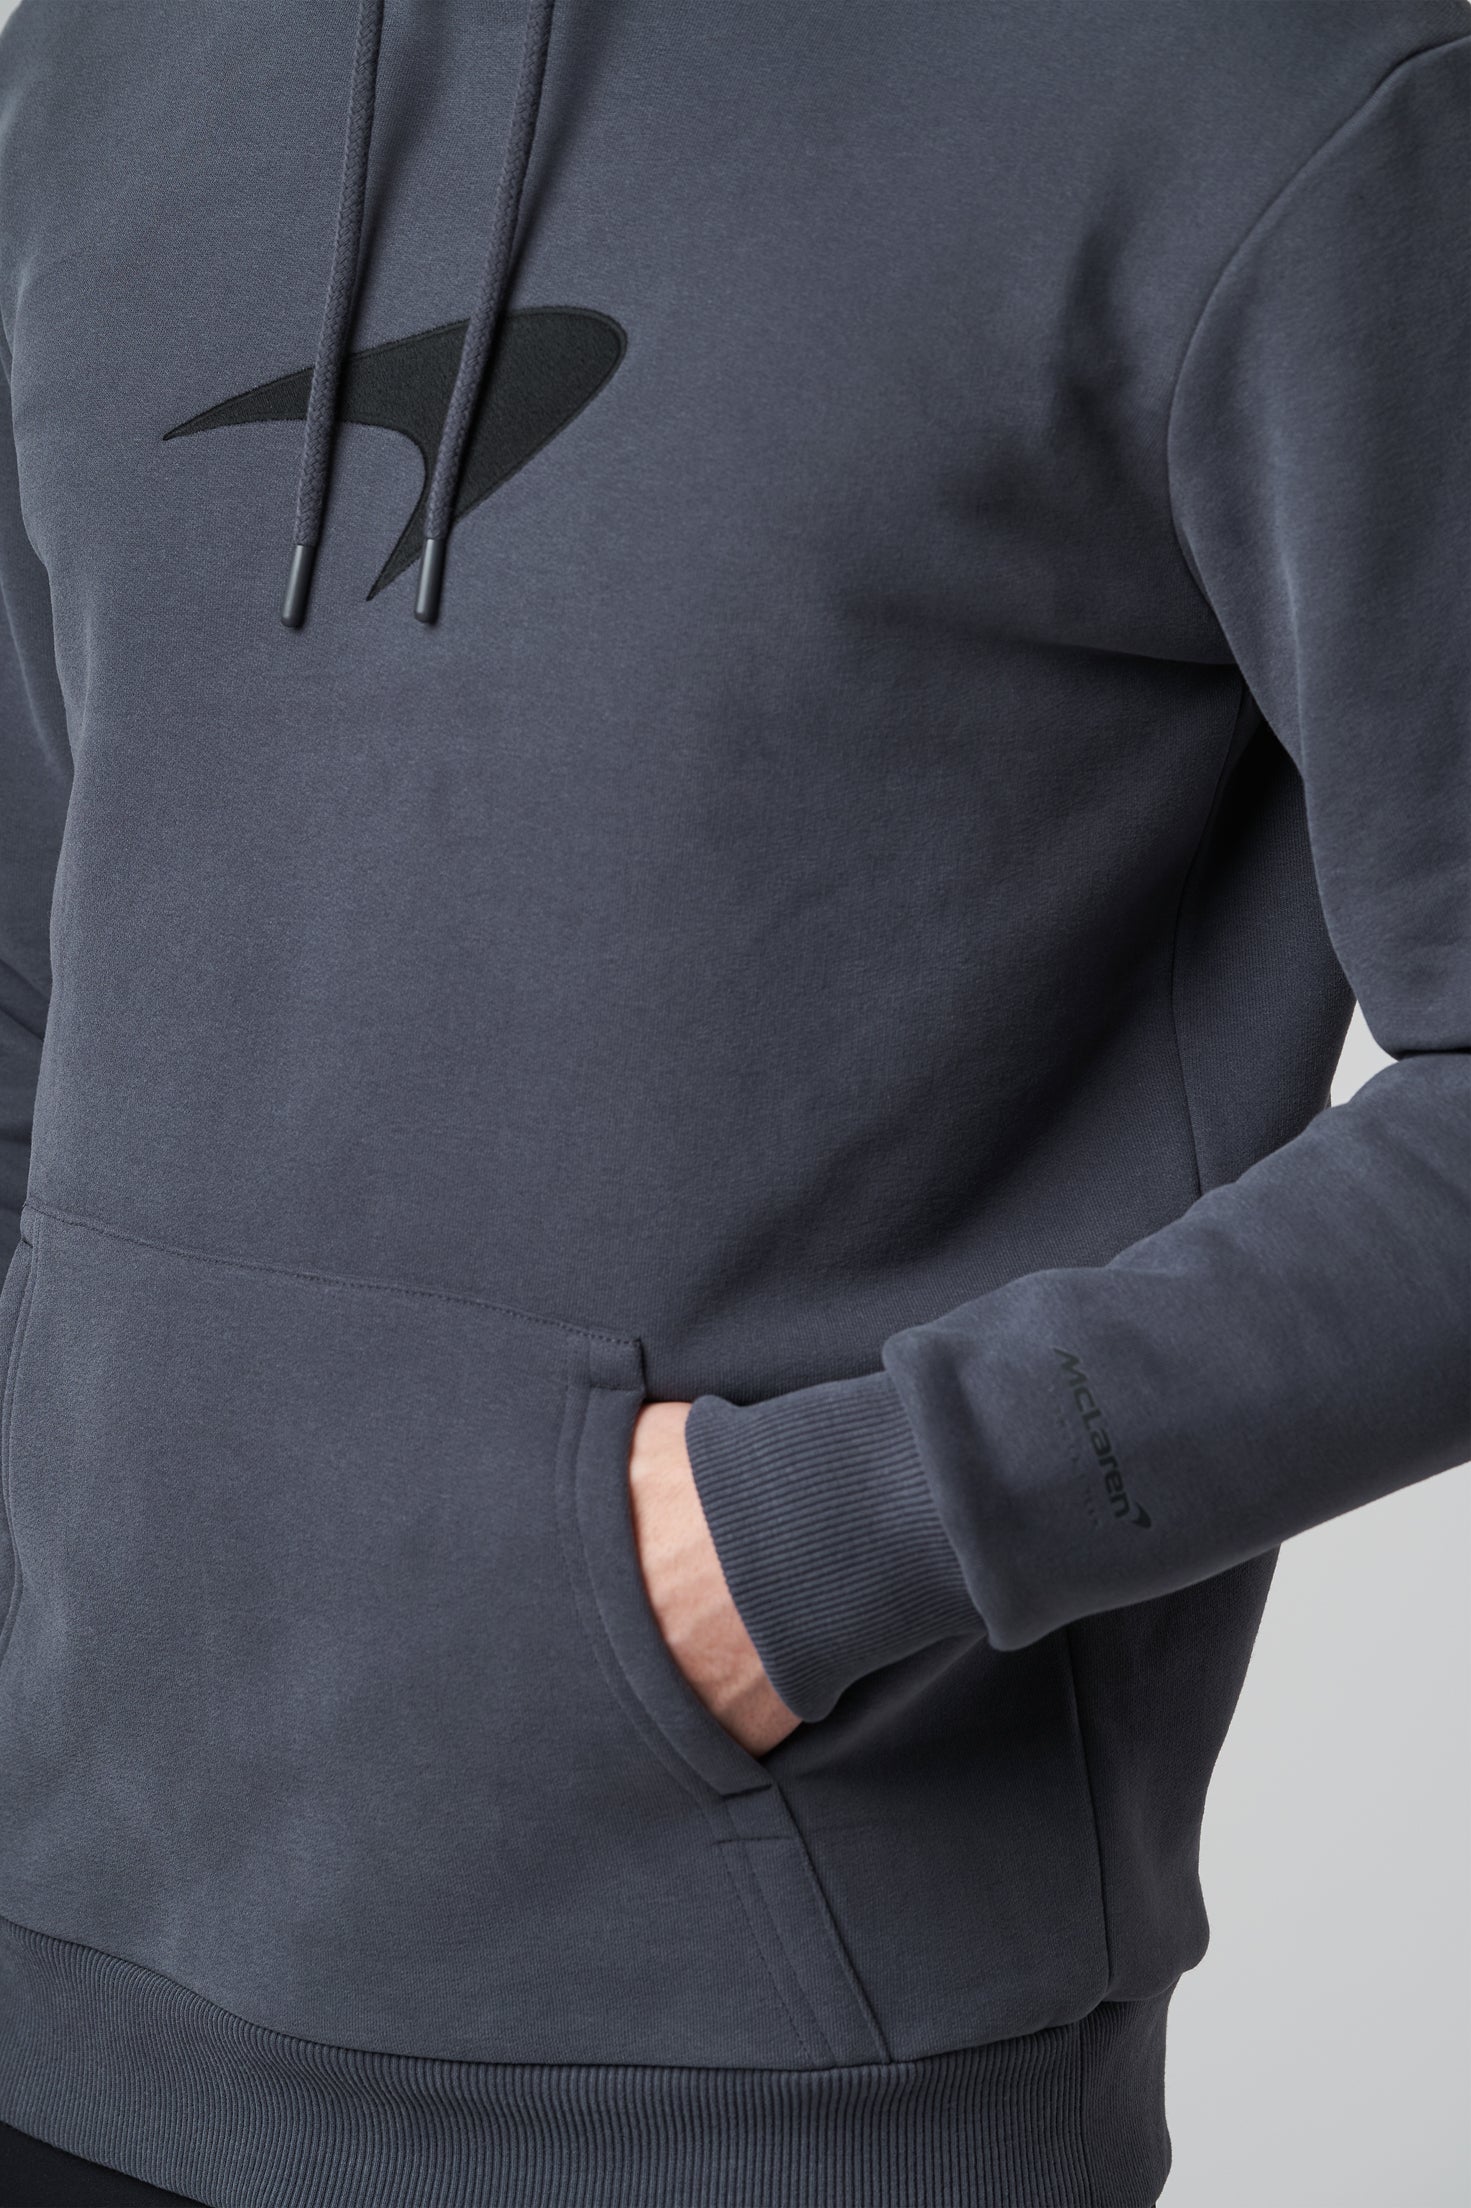 Mclaren F1 Men's Speedmark Logo Hooded Sweatshirt Dark Grey